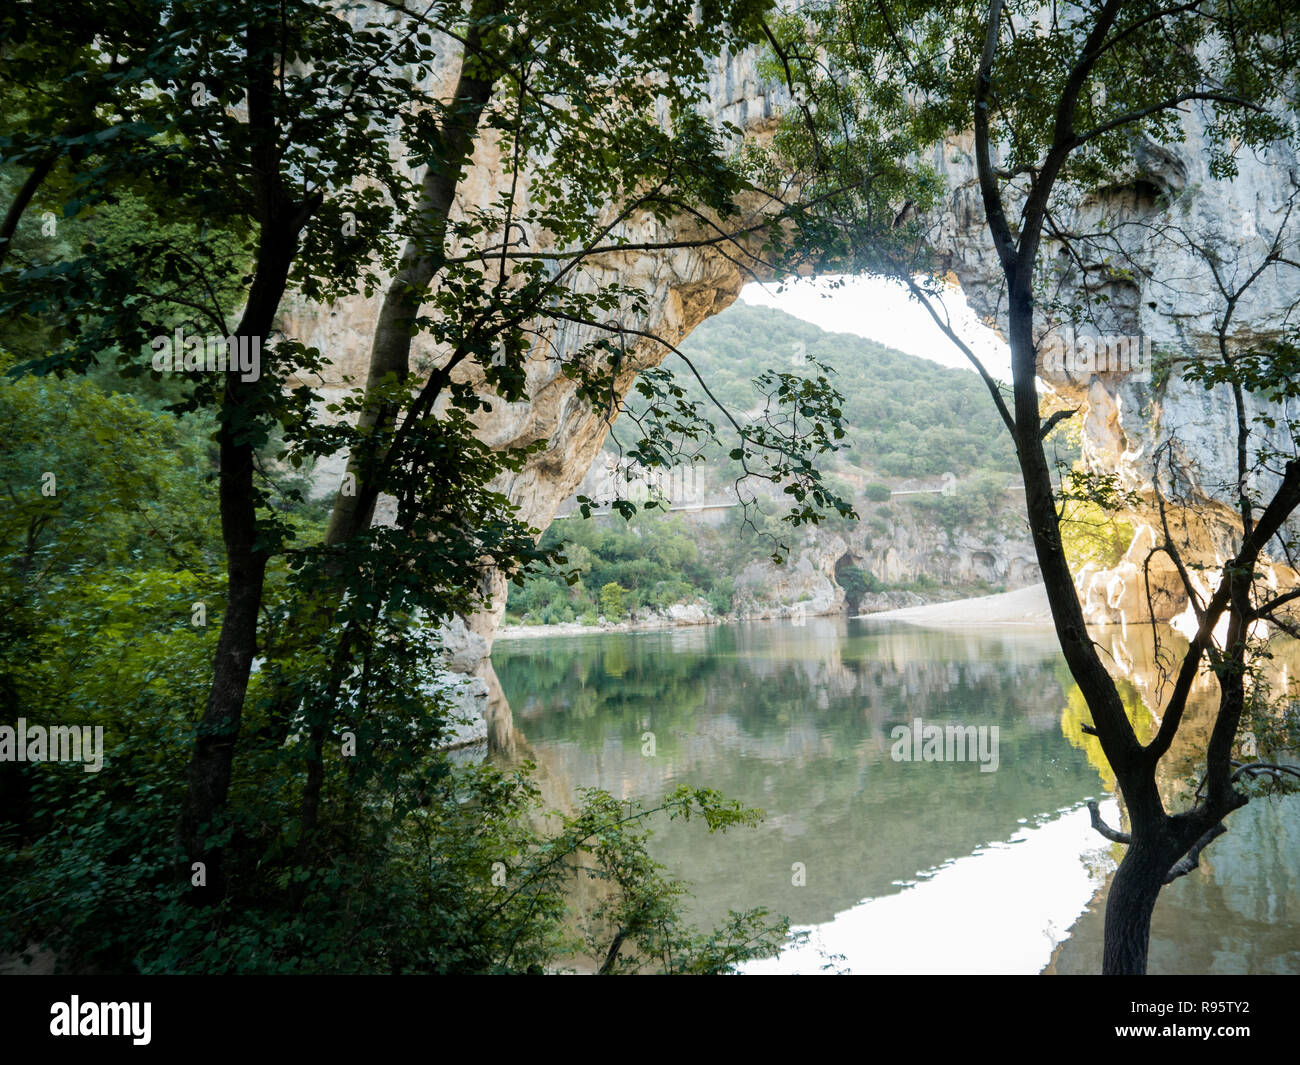 Pont naturel Pont d'Arc sur la rivière Ardèche, dans le sud de la France Banque D'Images